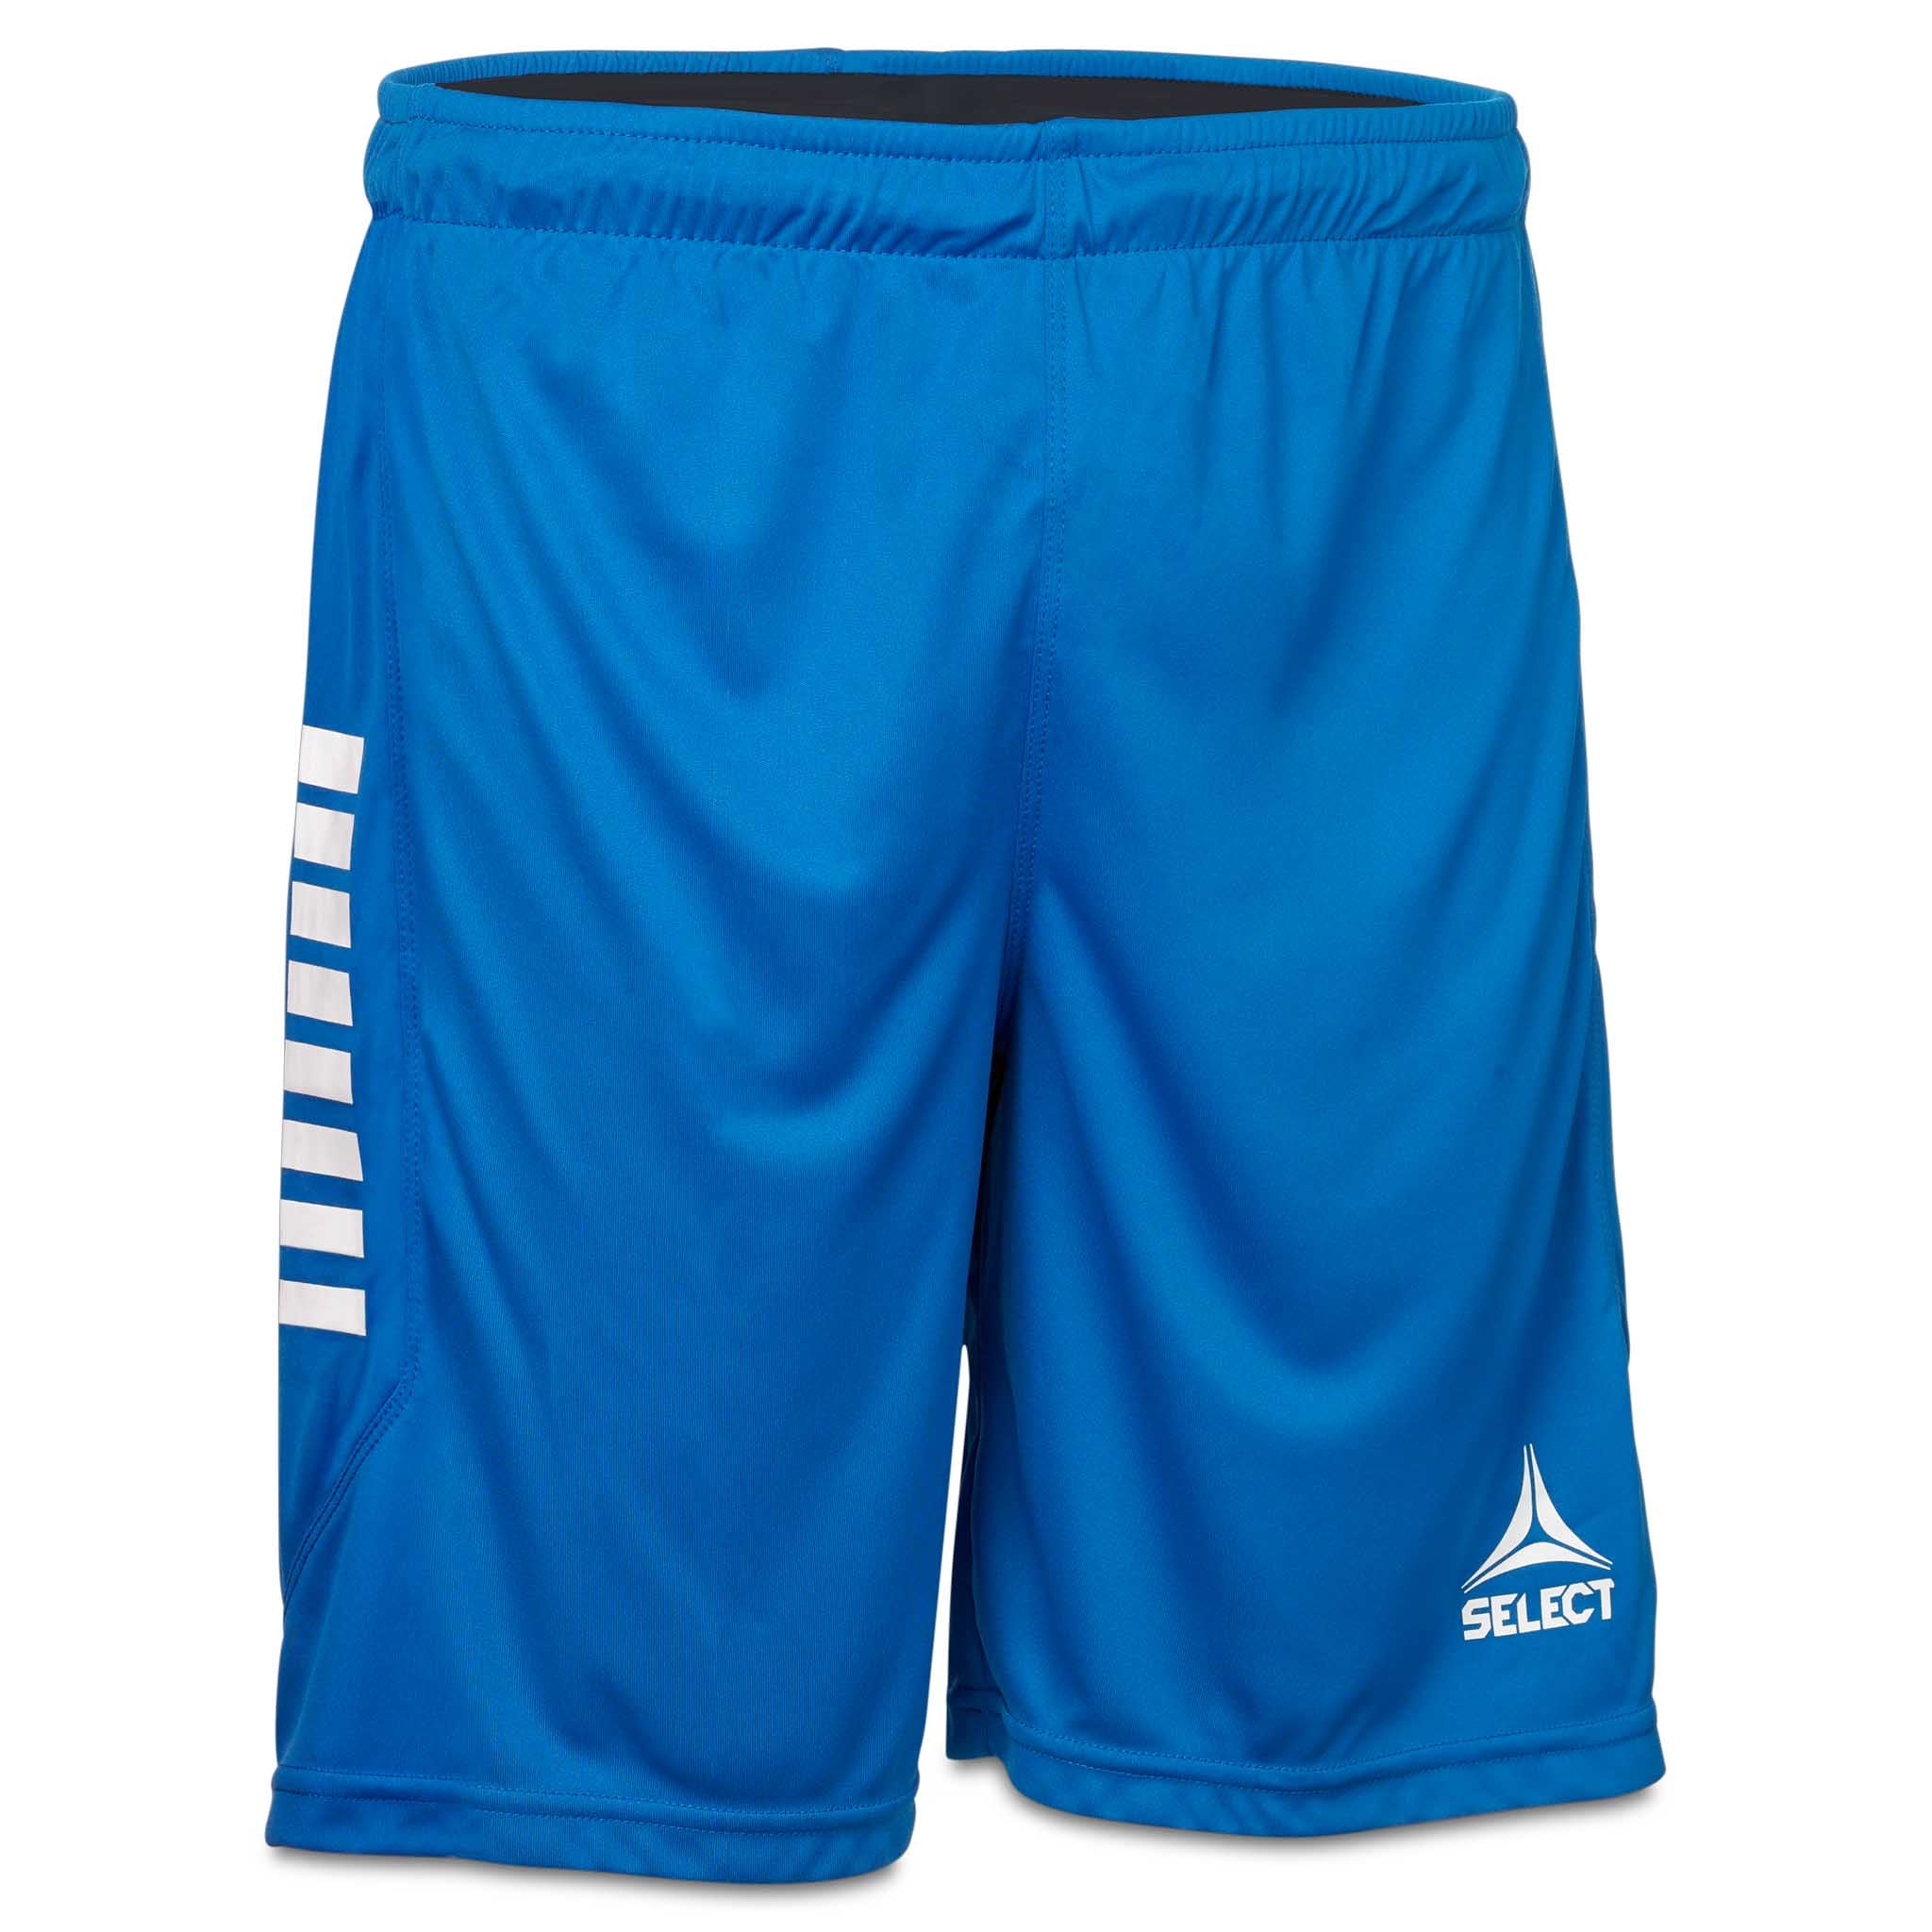 Monaco shorts - Børn #farve_blå/hvid